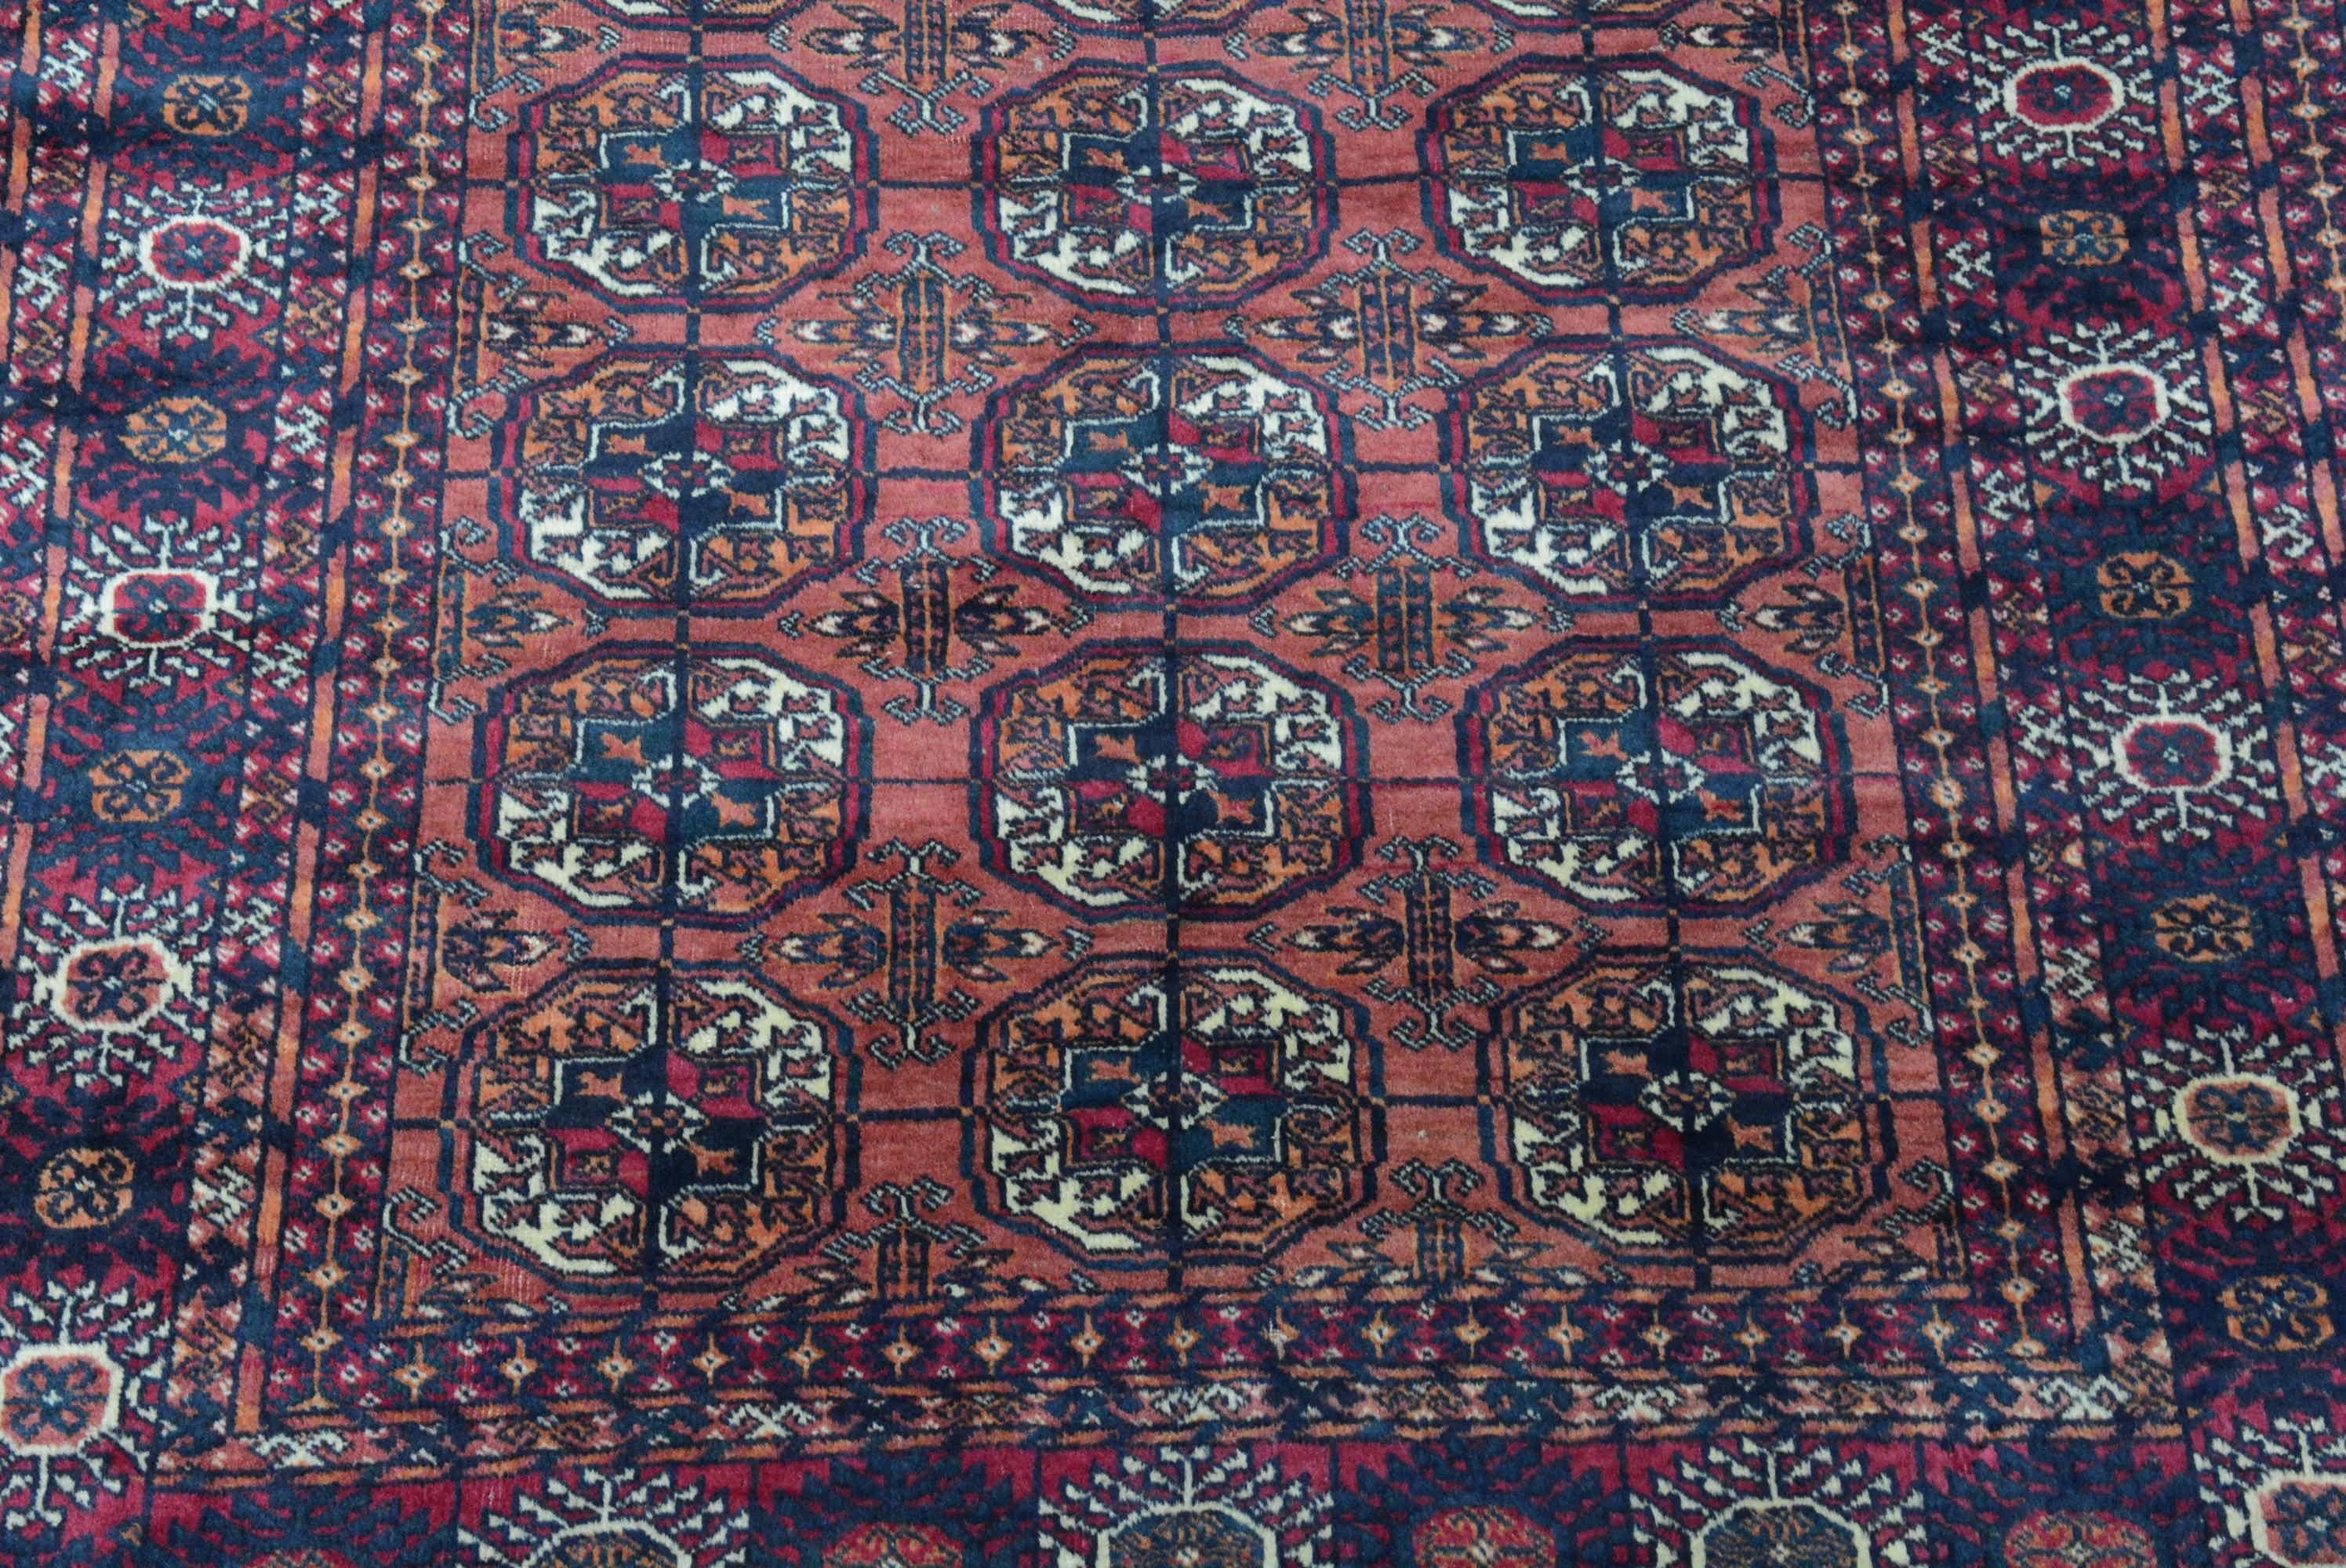 Les tapis et moquettes Turkoman sont tissés dans la région située à l'est de la mer Caspienne, connue sous le nom de Turkestan occidental et peuplée de tribus nomades. L'élément de conception qui distingue ce type de tapis est le médaillon de gulle,